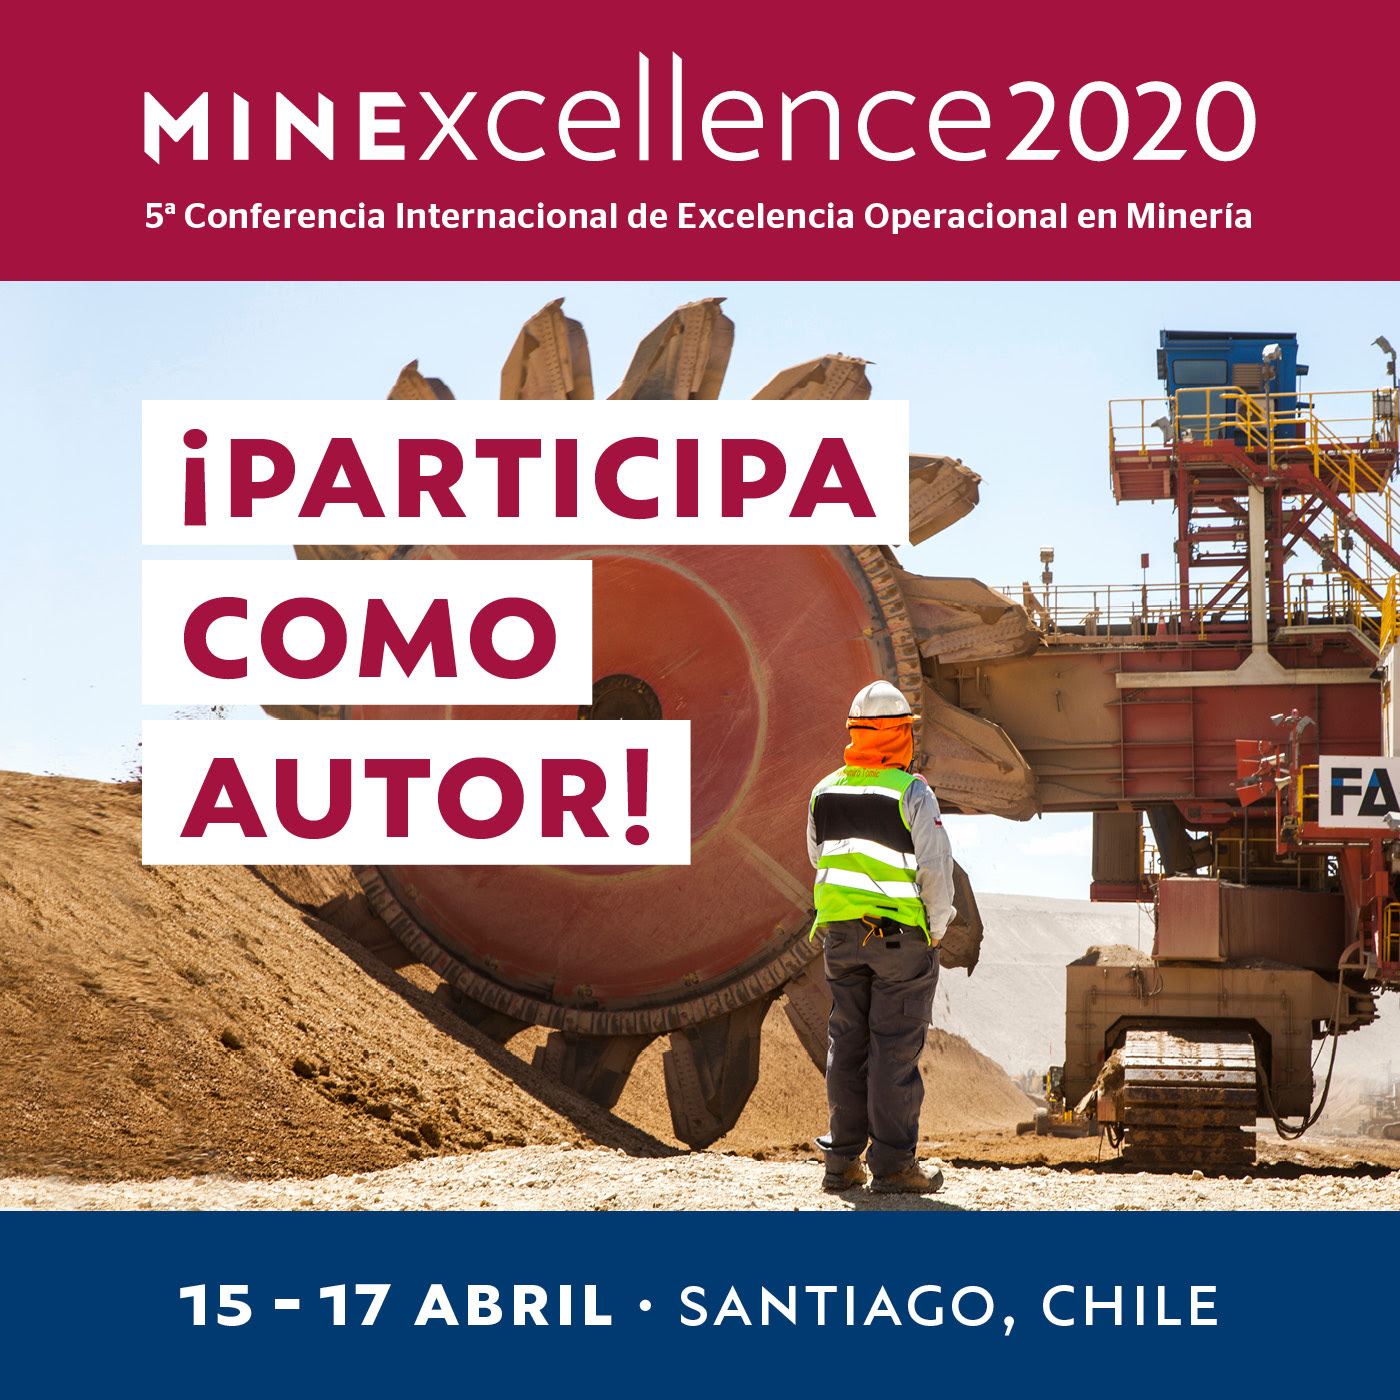 Conferencia Internacional de Excelencia Operacional en Minería - Minexcellence 2020